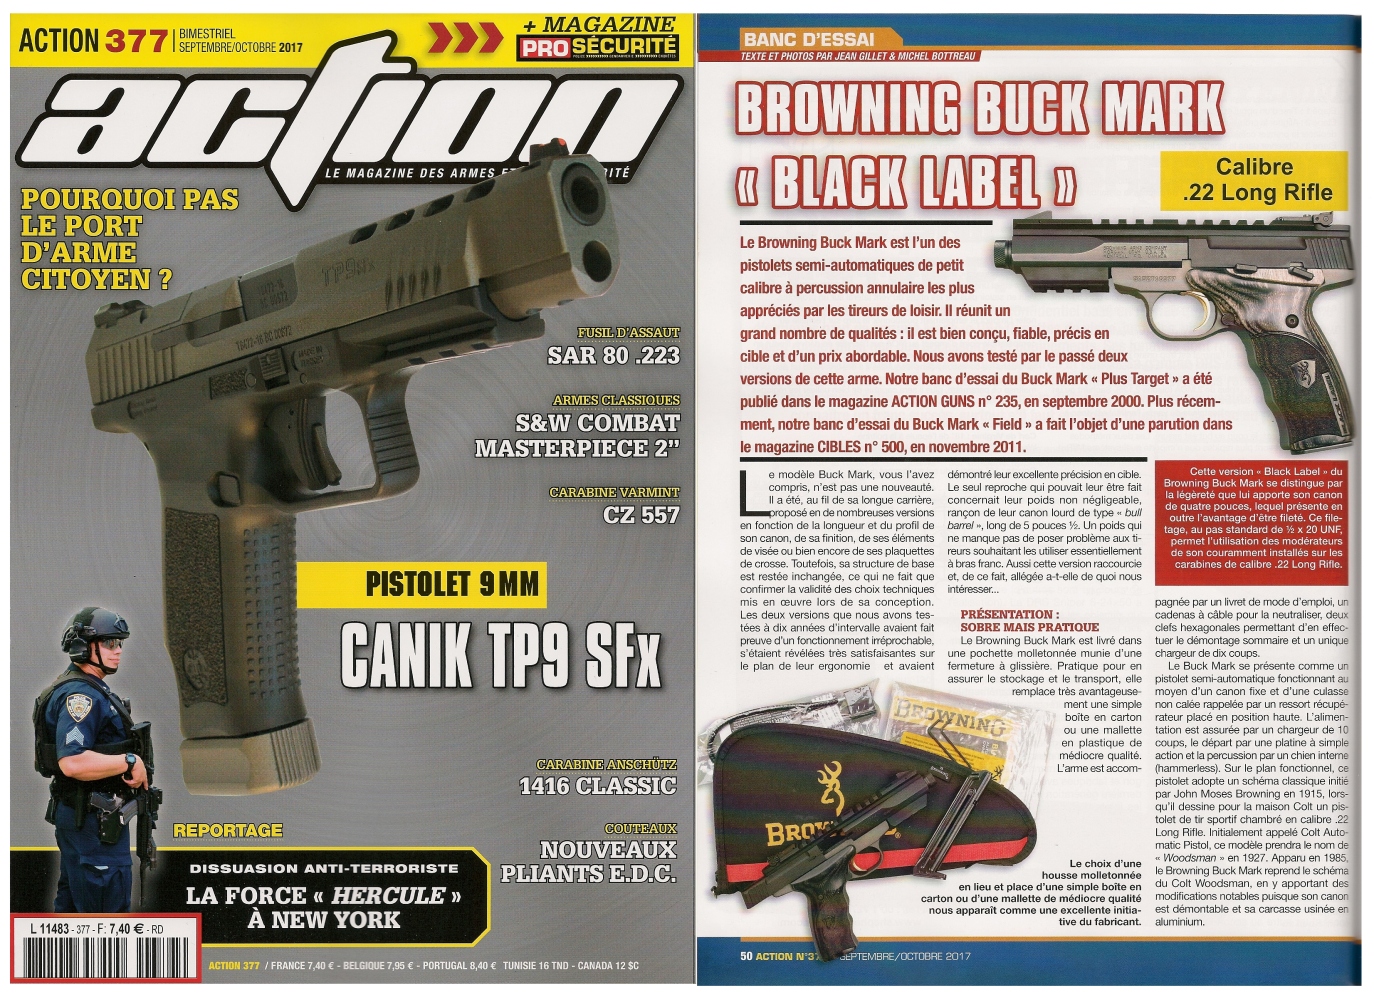 Le banc d'essai du pistolet Browning Buck Mark Black Label a été publié sur 6 pages dans le magazine Action n° 377 (septembre/octobre 2017). 